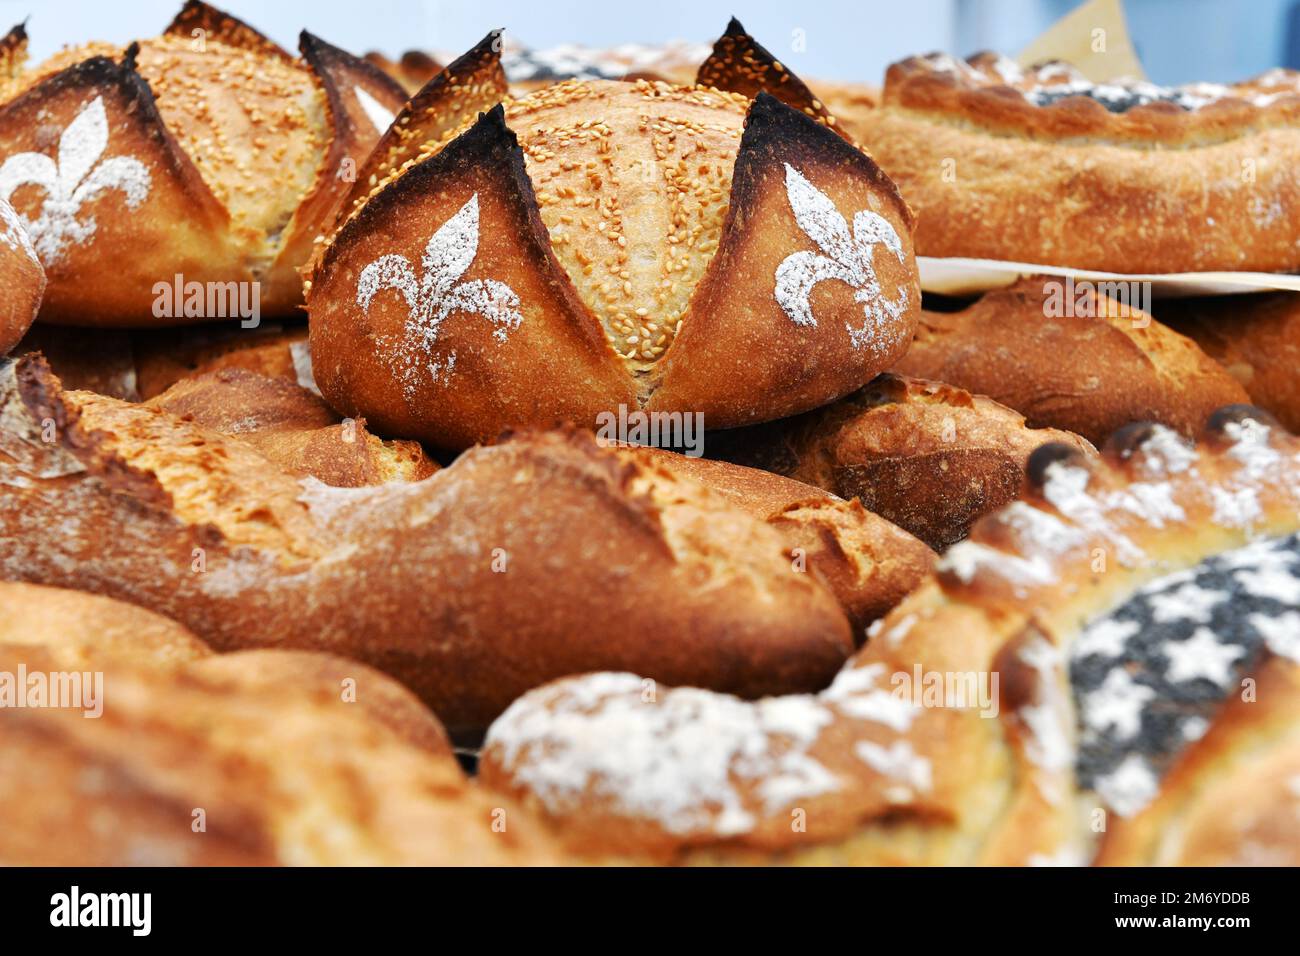 https://c8.alamy.com/comp/2M6YDDB/french-bread-in-a-bakery-france-2M6YDDB.jpg